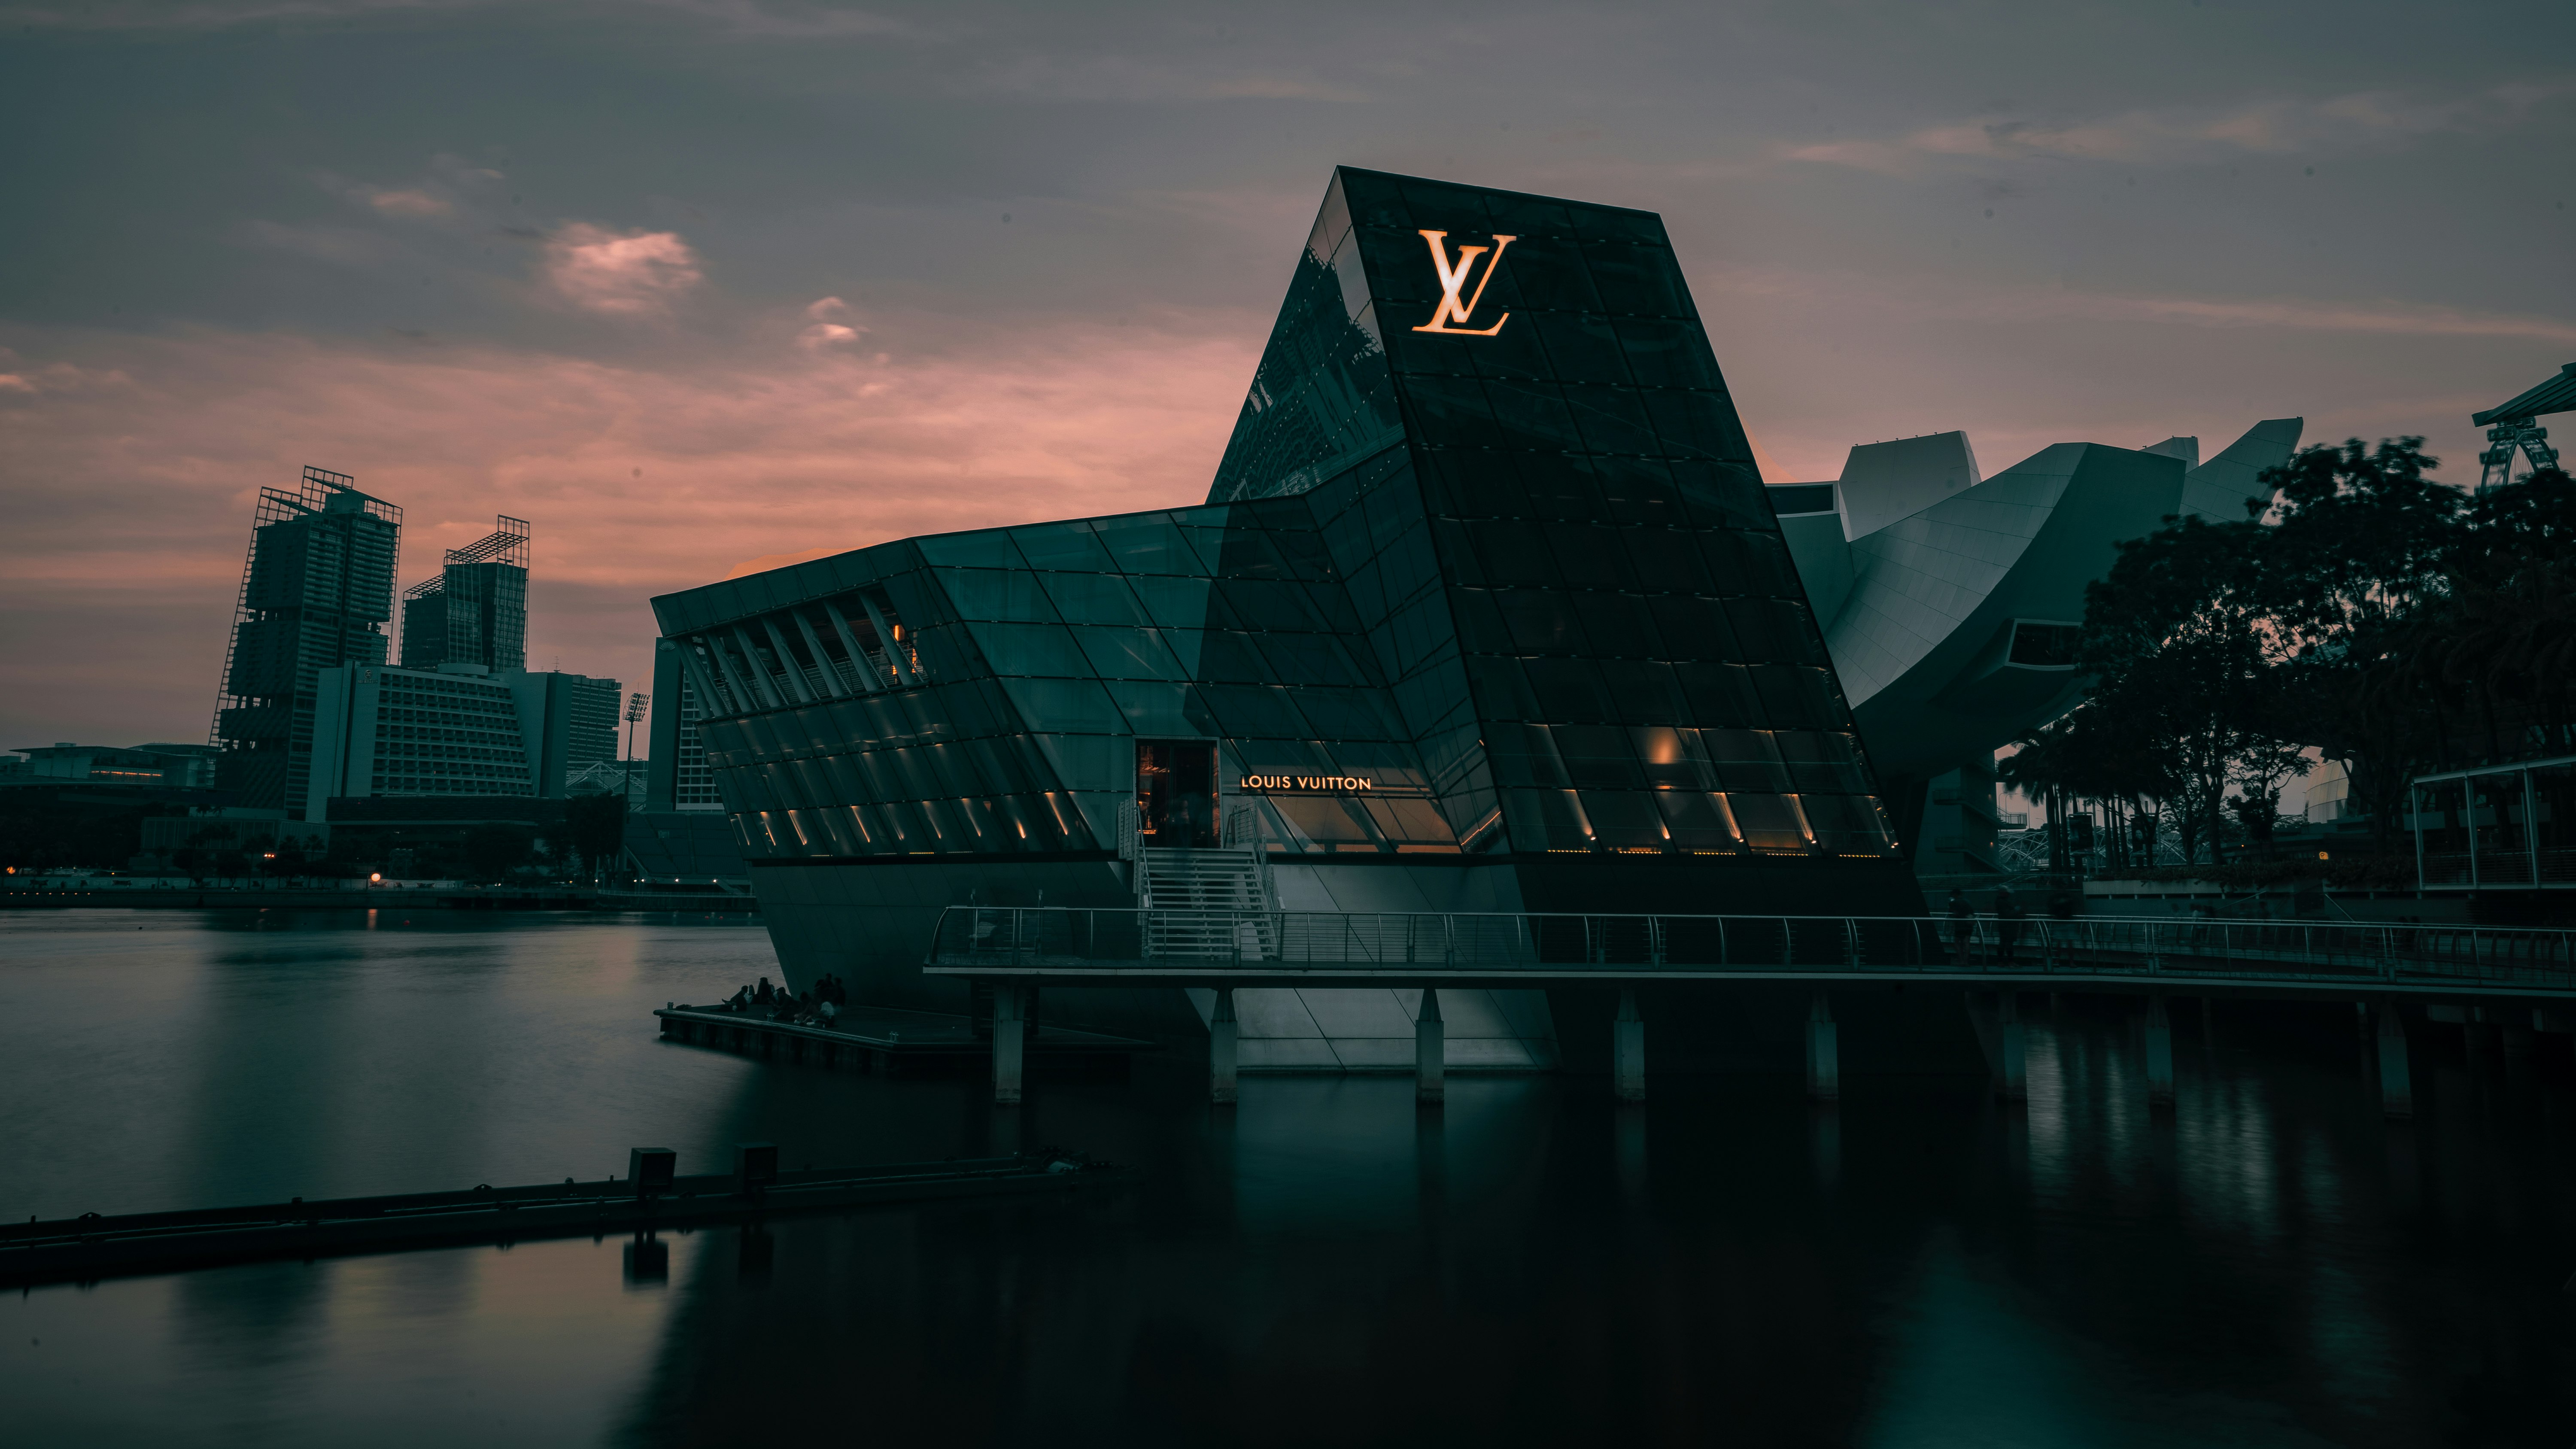 Louis Vuitton building during golden hour